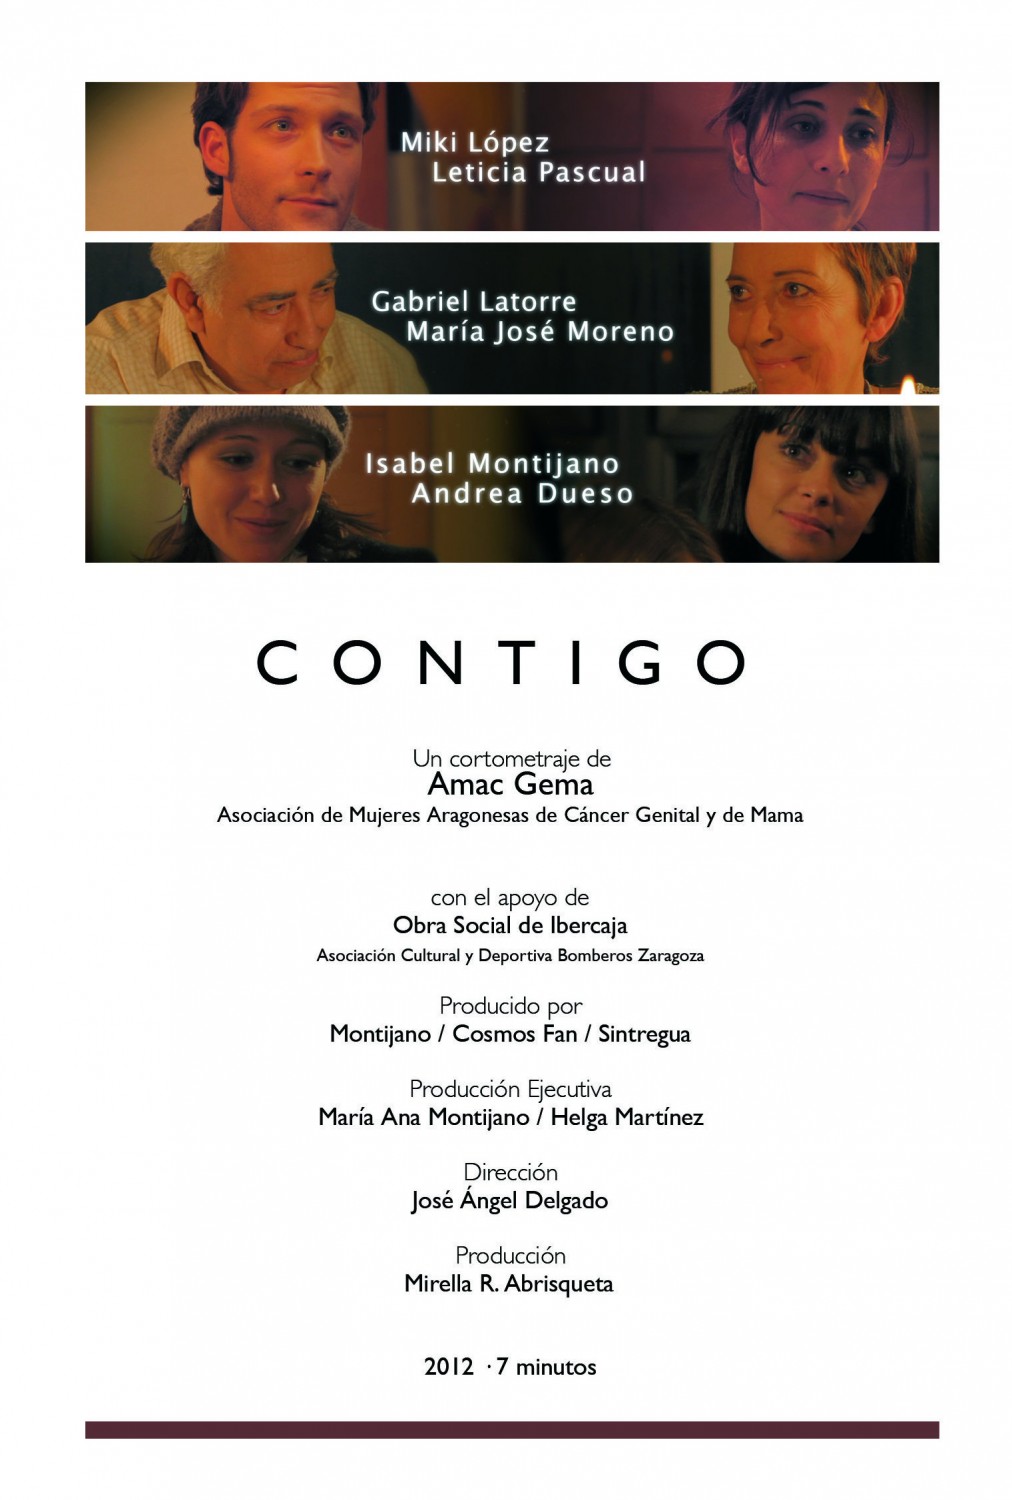 Extra Large Movie Poster Image for Contigo